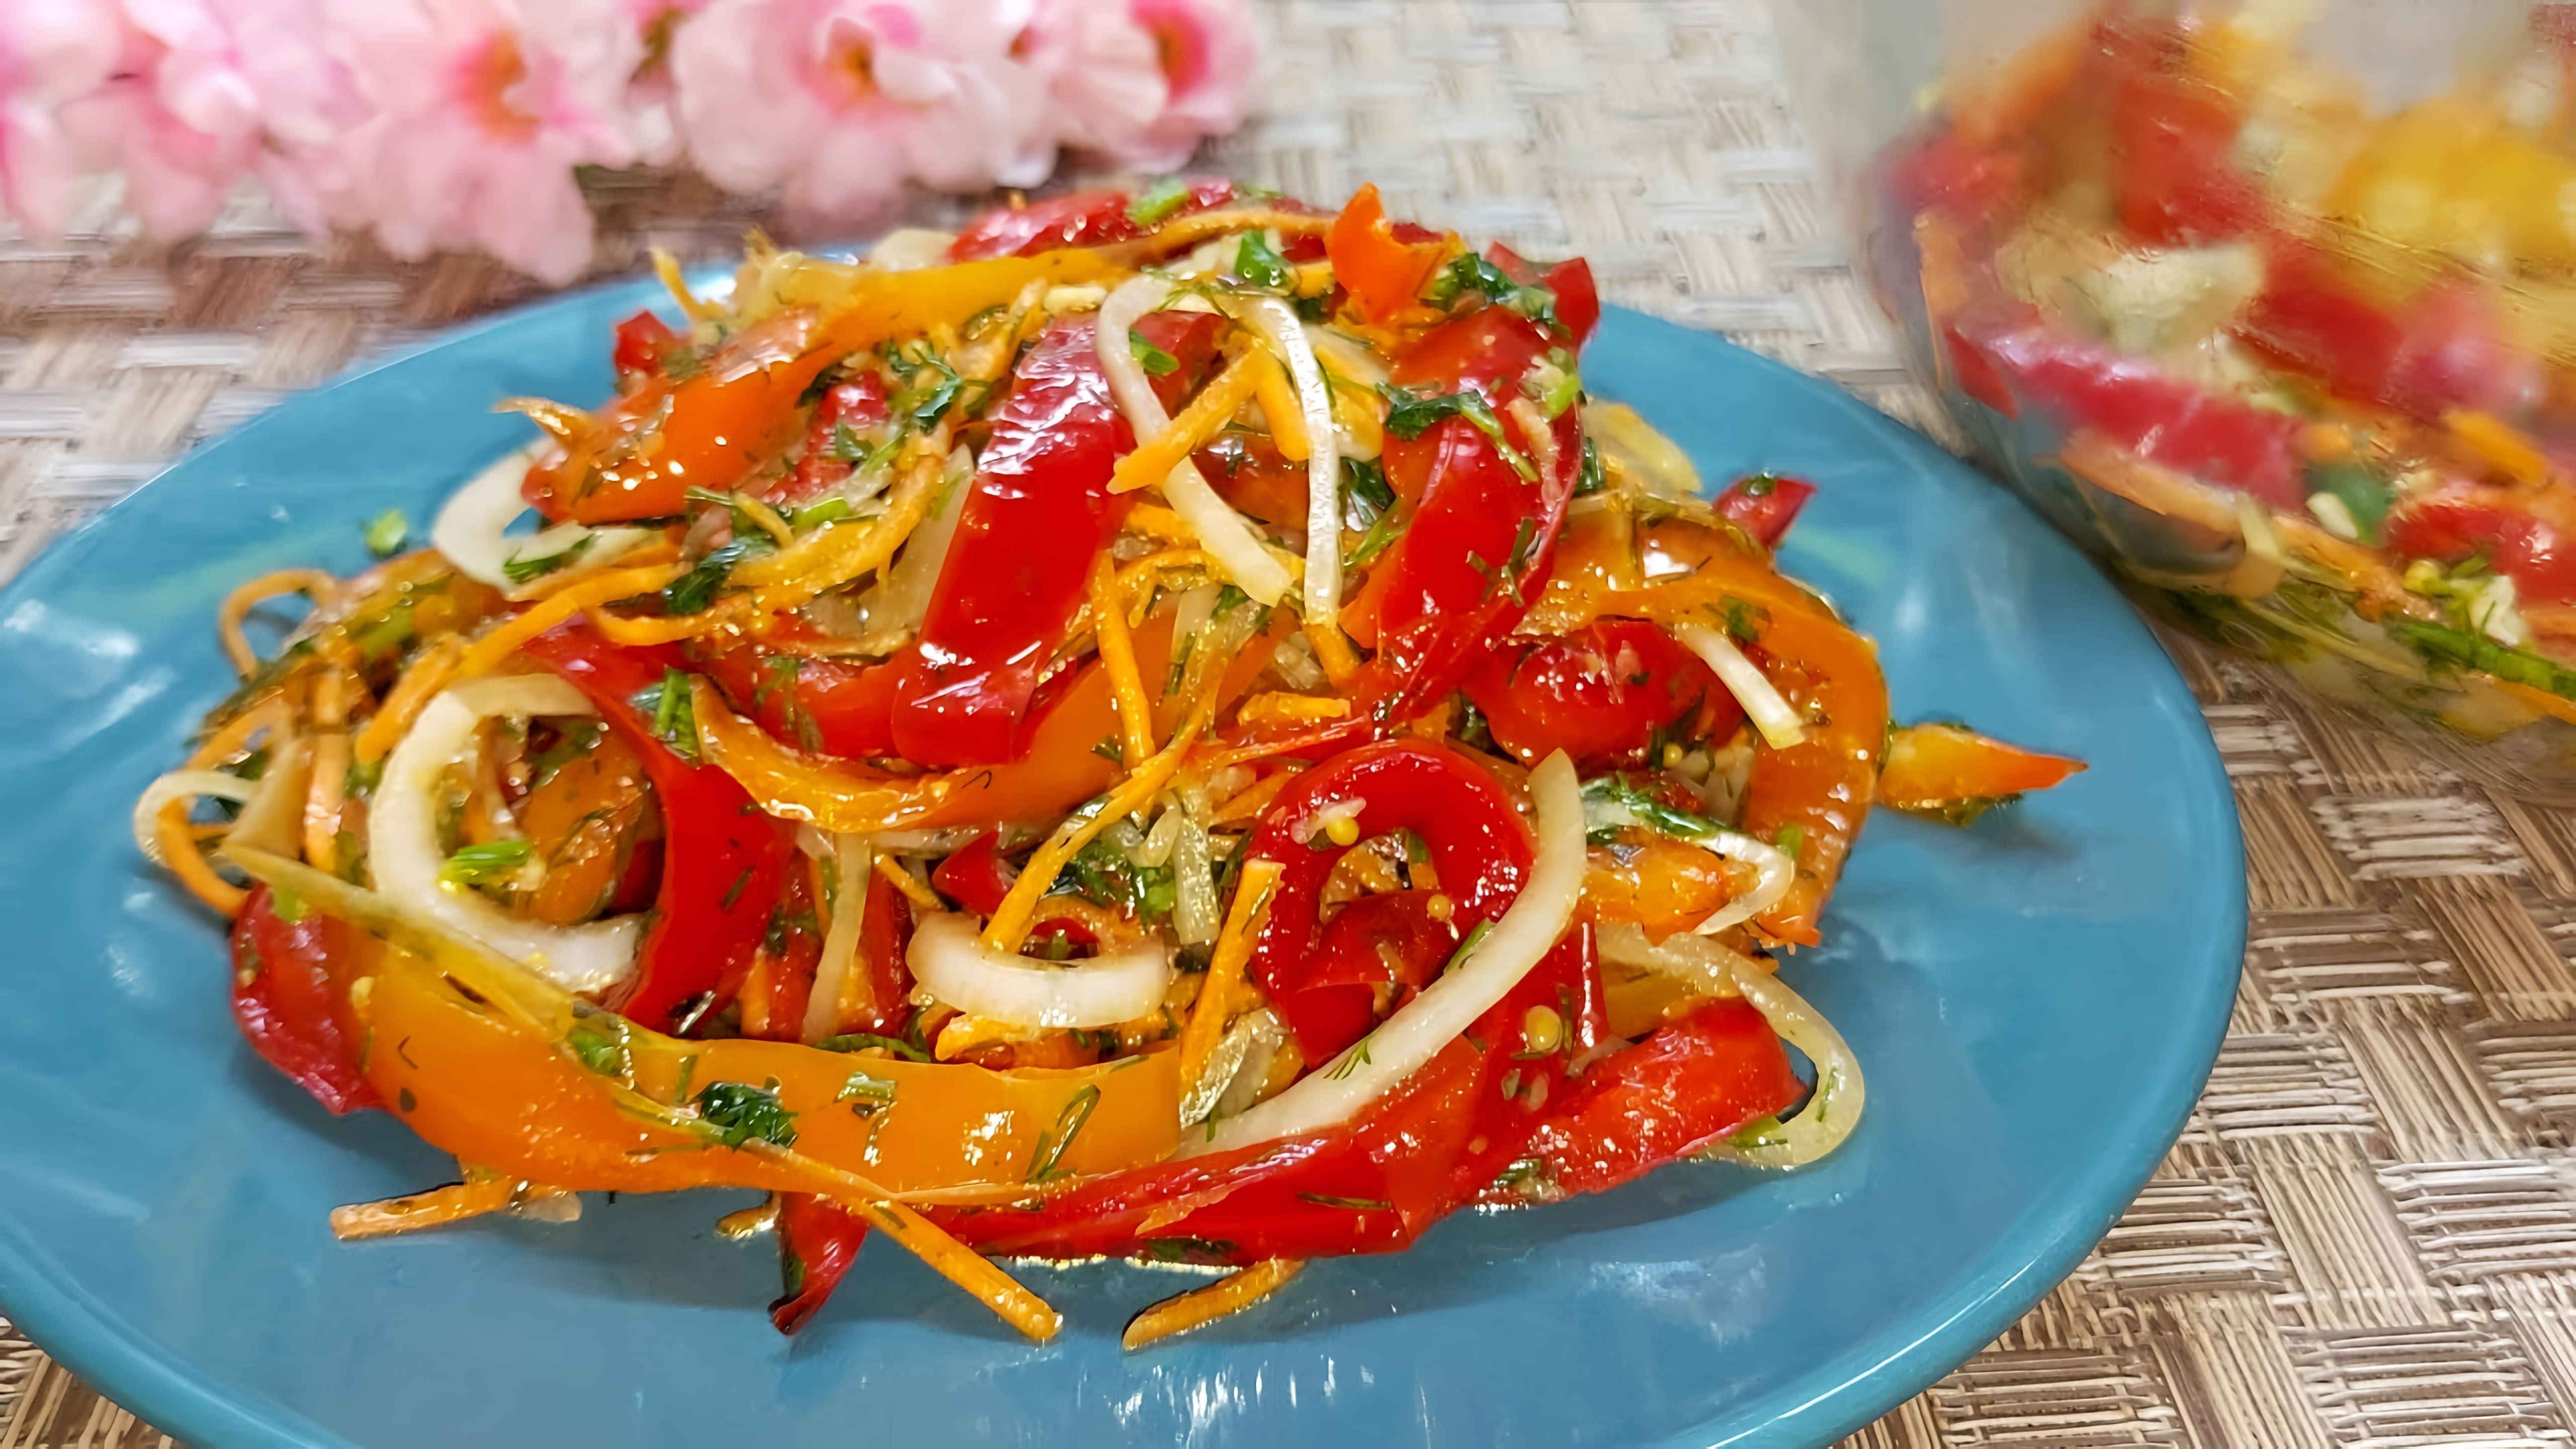 В этом видео демонстрируется рецепт быстрого салата из болгарского перца с супер заправкой